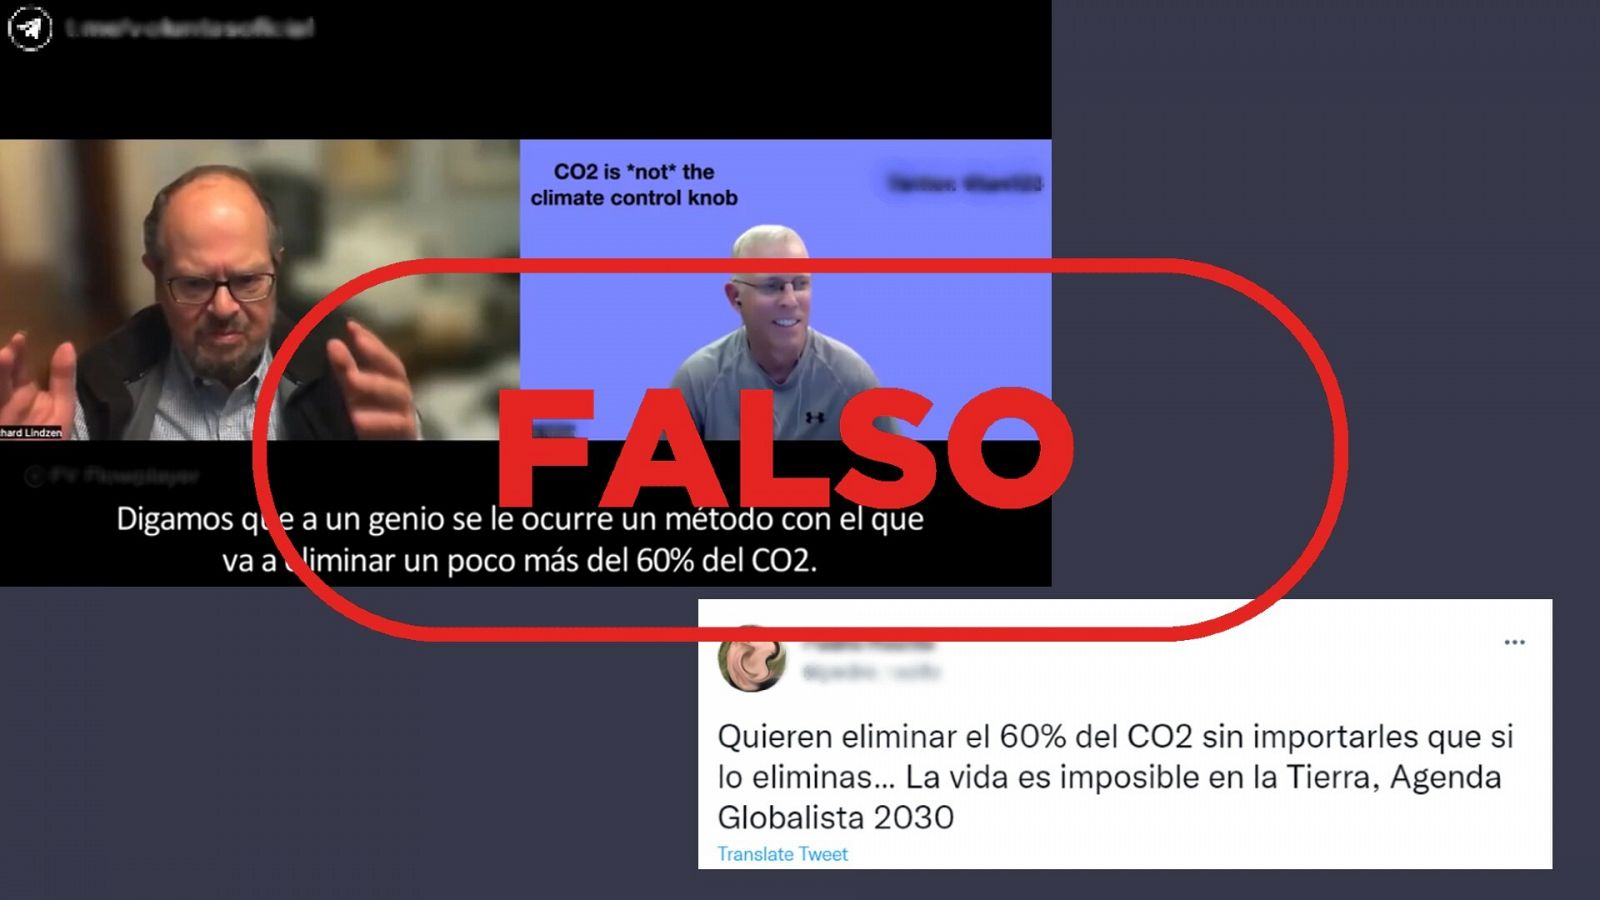 Mensajes de redes sociales que desinforman sobre las emisiones de dióxido de carbono a la atmósfera. Con el sello falso.